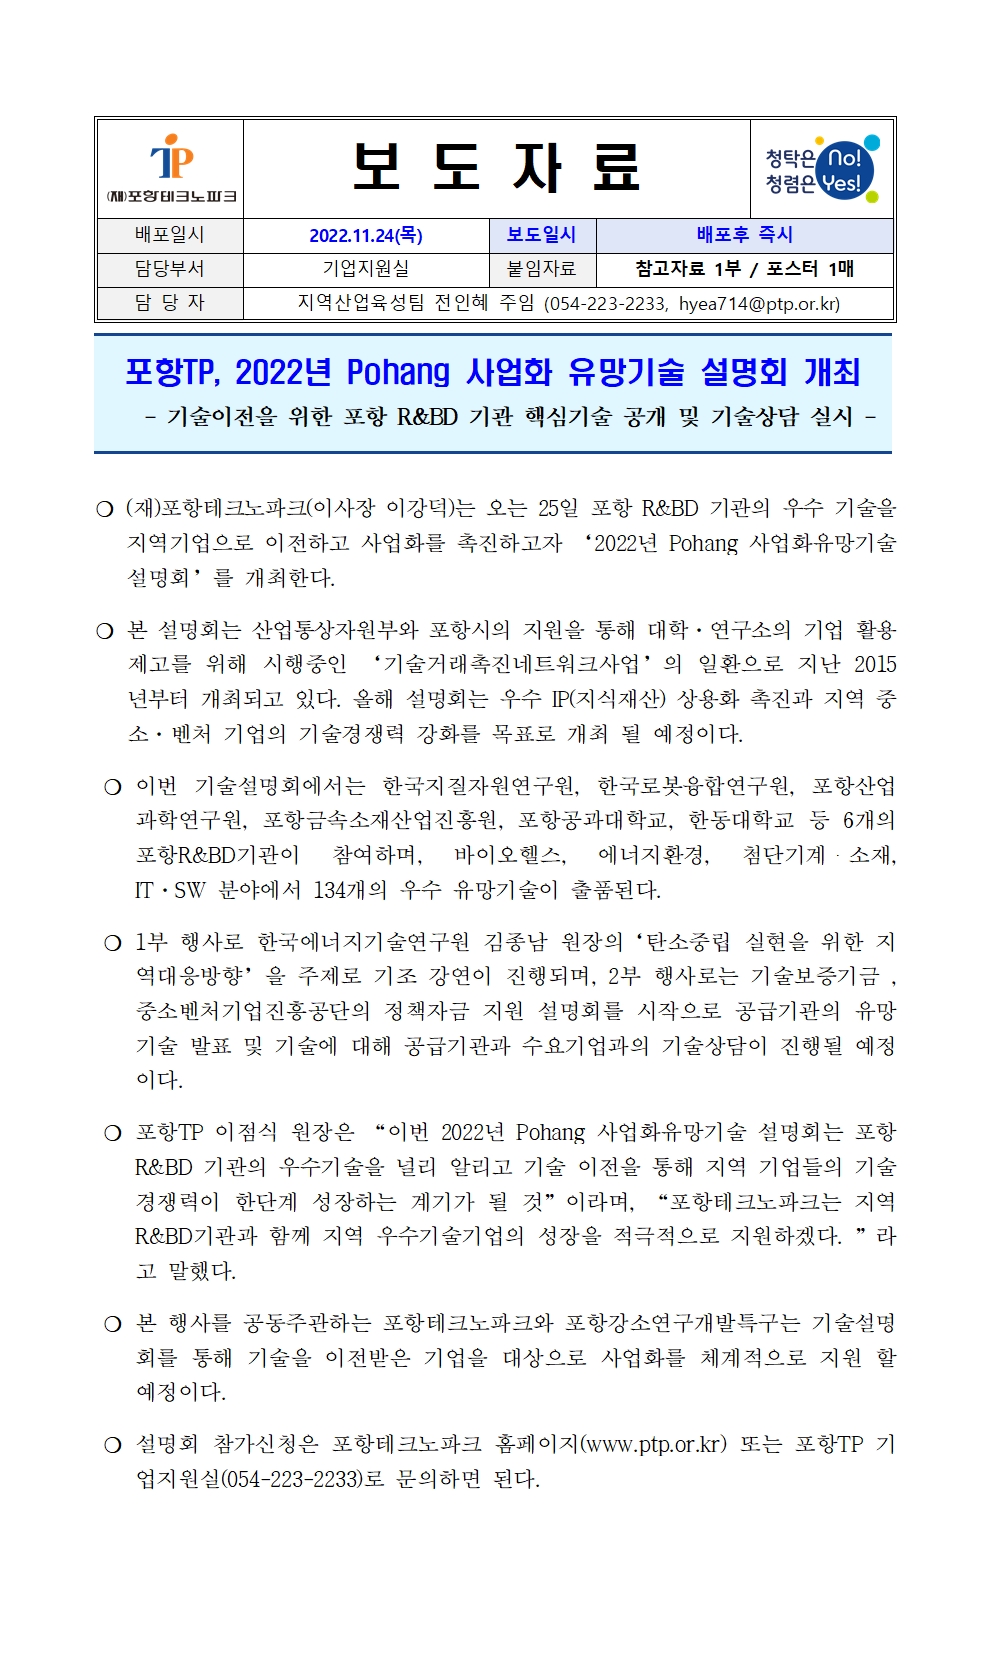 [포항TP] 보도자료_22.11.24._포항TP, 2022년 Pohang 사업화 유망기술 설명회 개최001.jpg